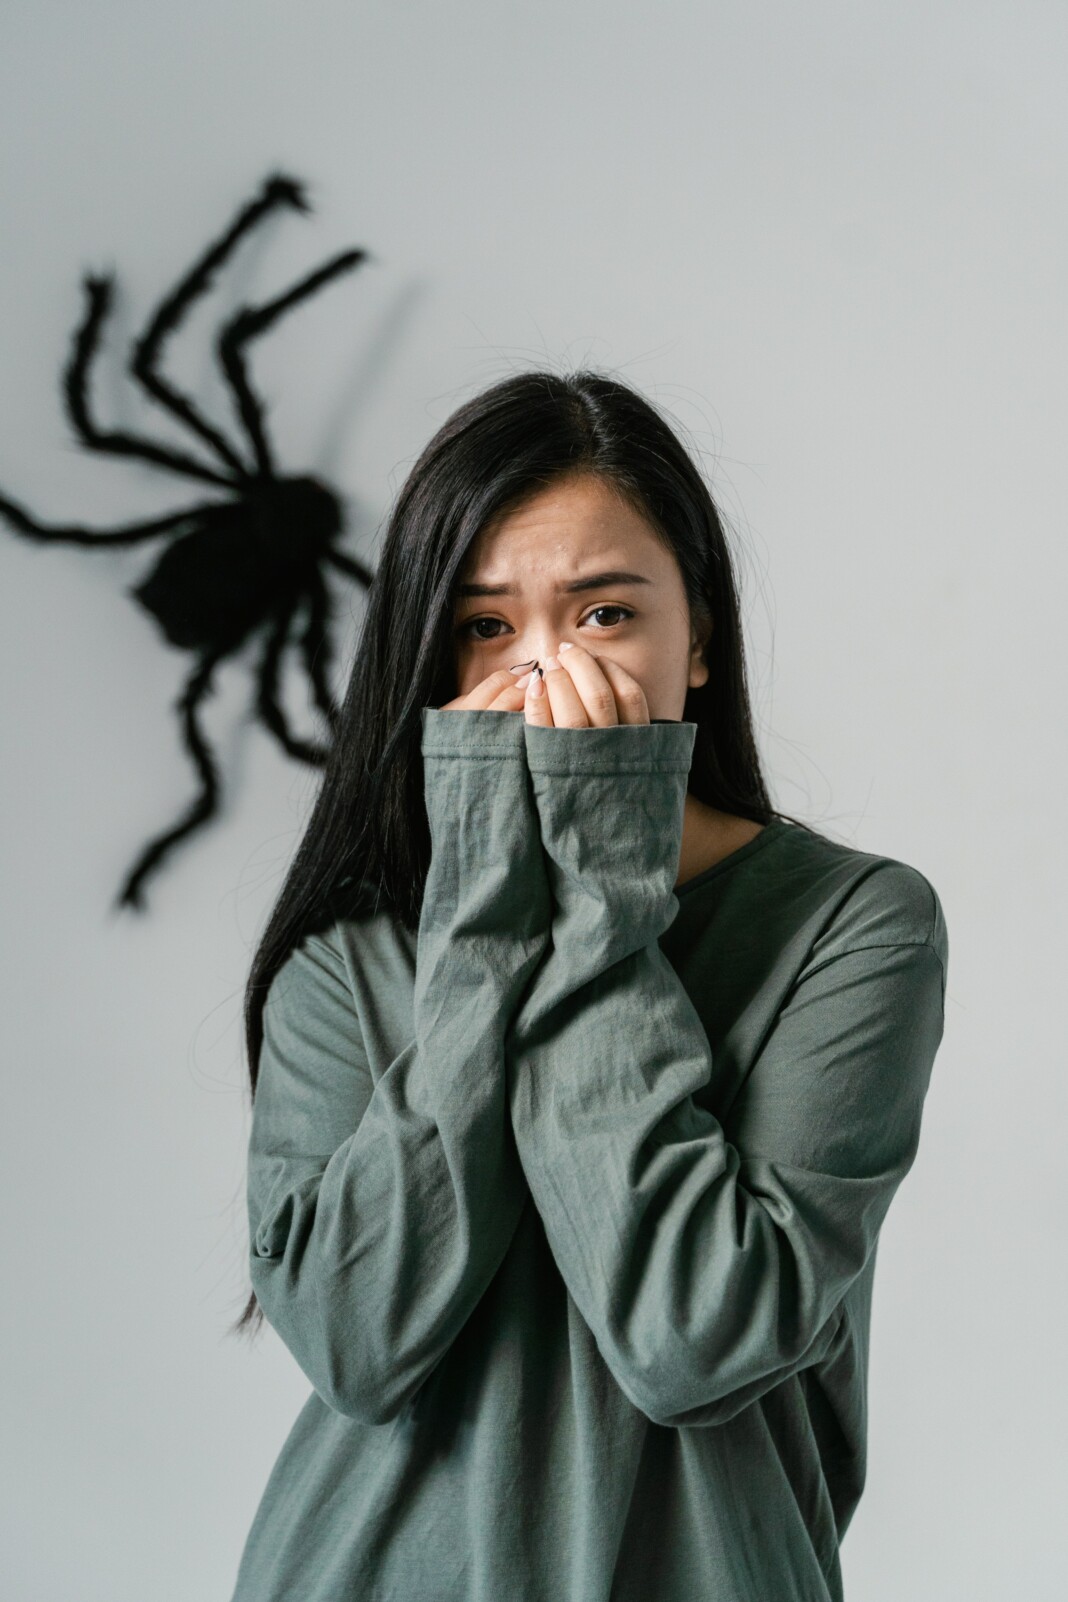 Femme effrayée regardant une grande araignée derrière elle dans une maison.